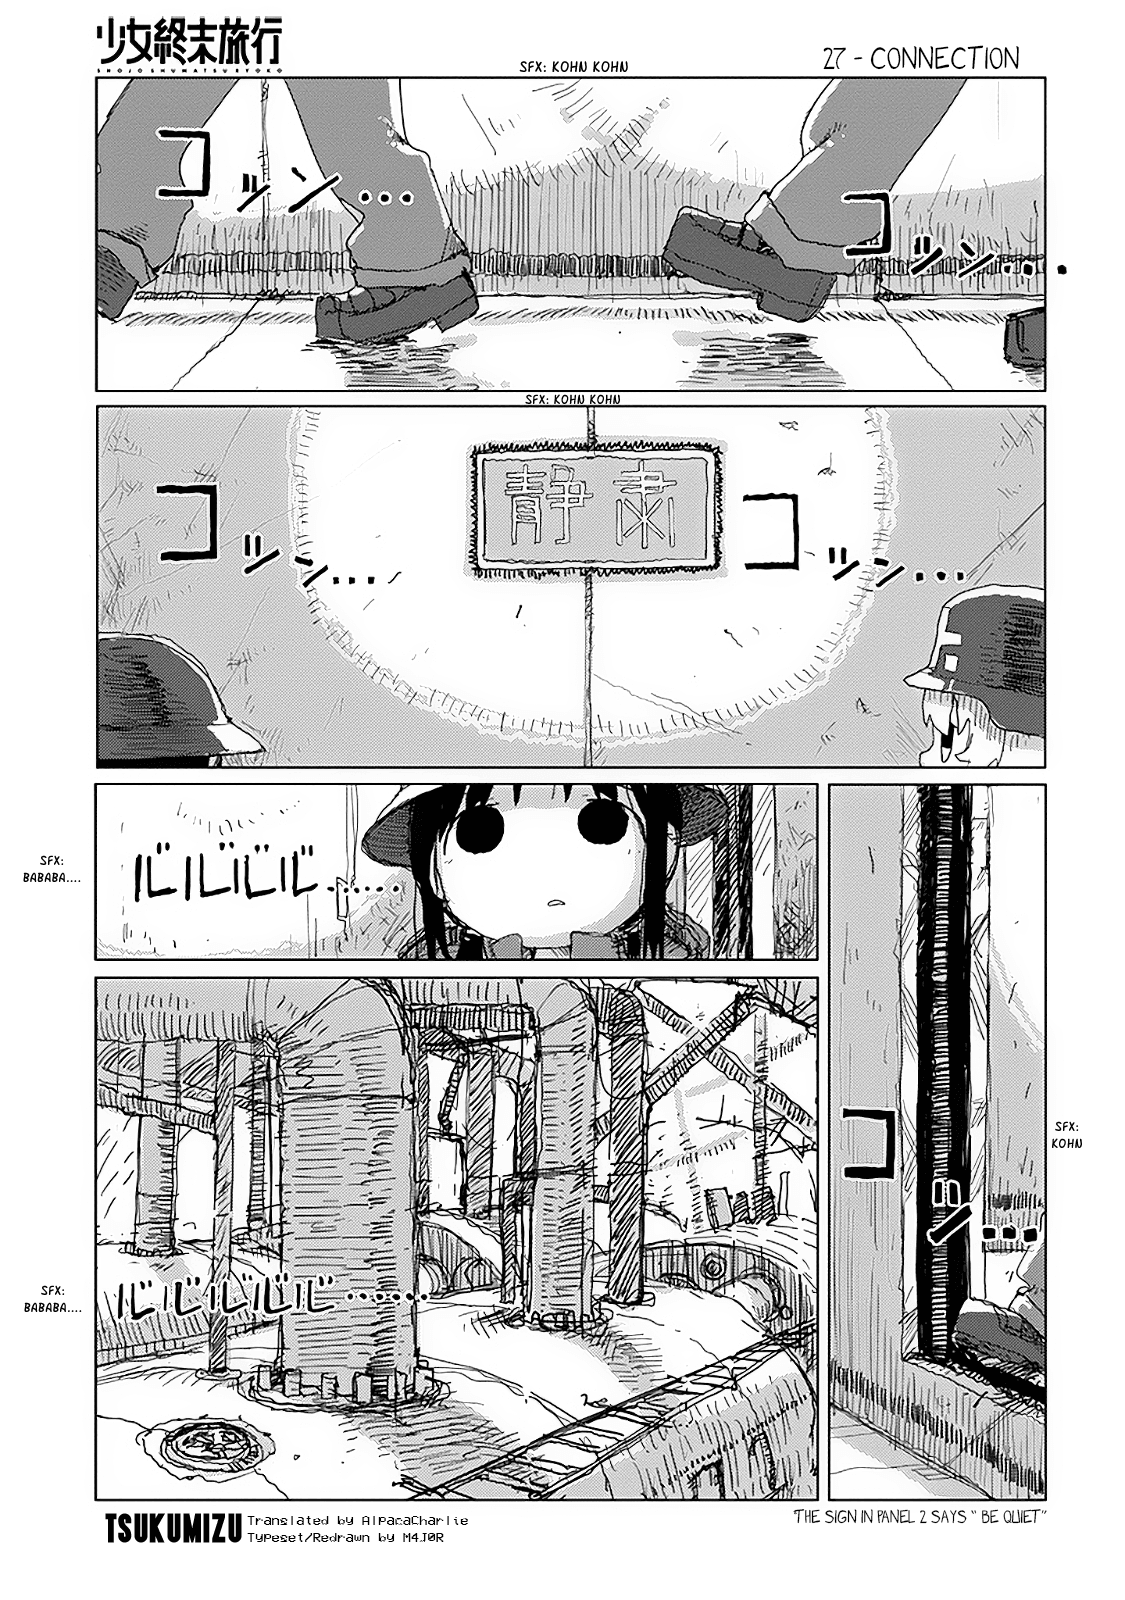 Shoujo Shuumatsu Ryokou Vol.4 Chapter 28: Connection - Picture 1